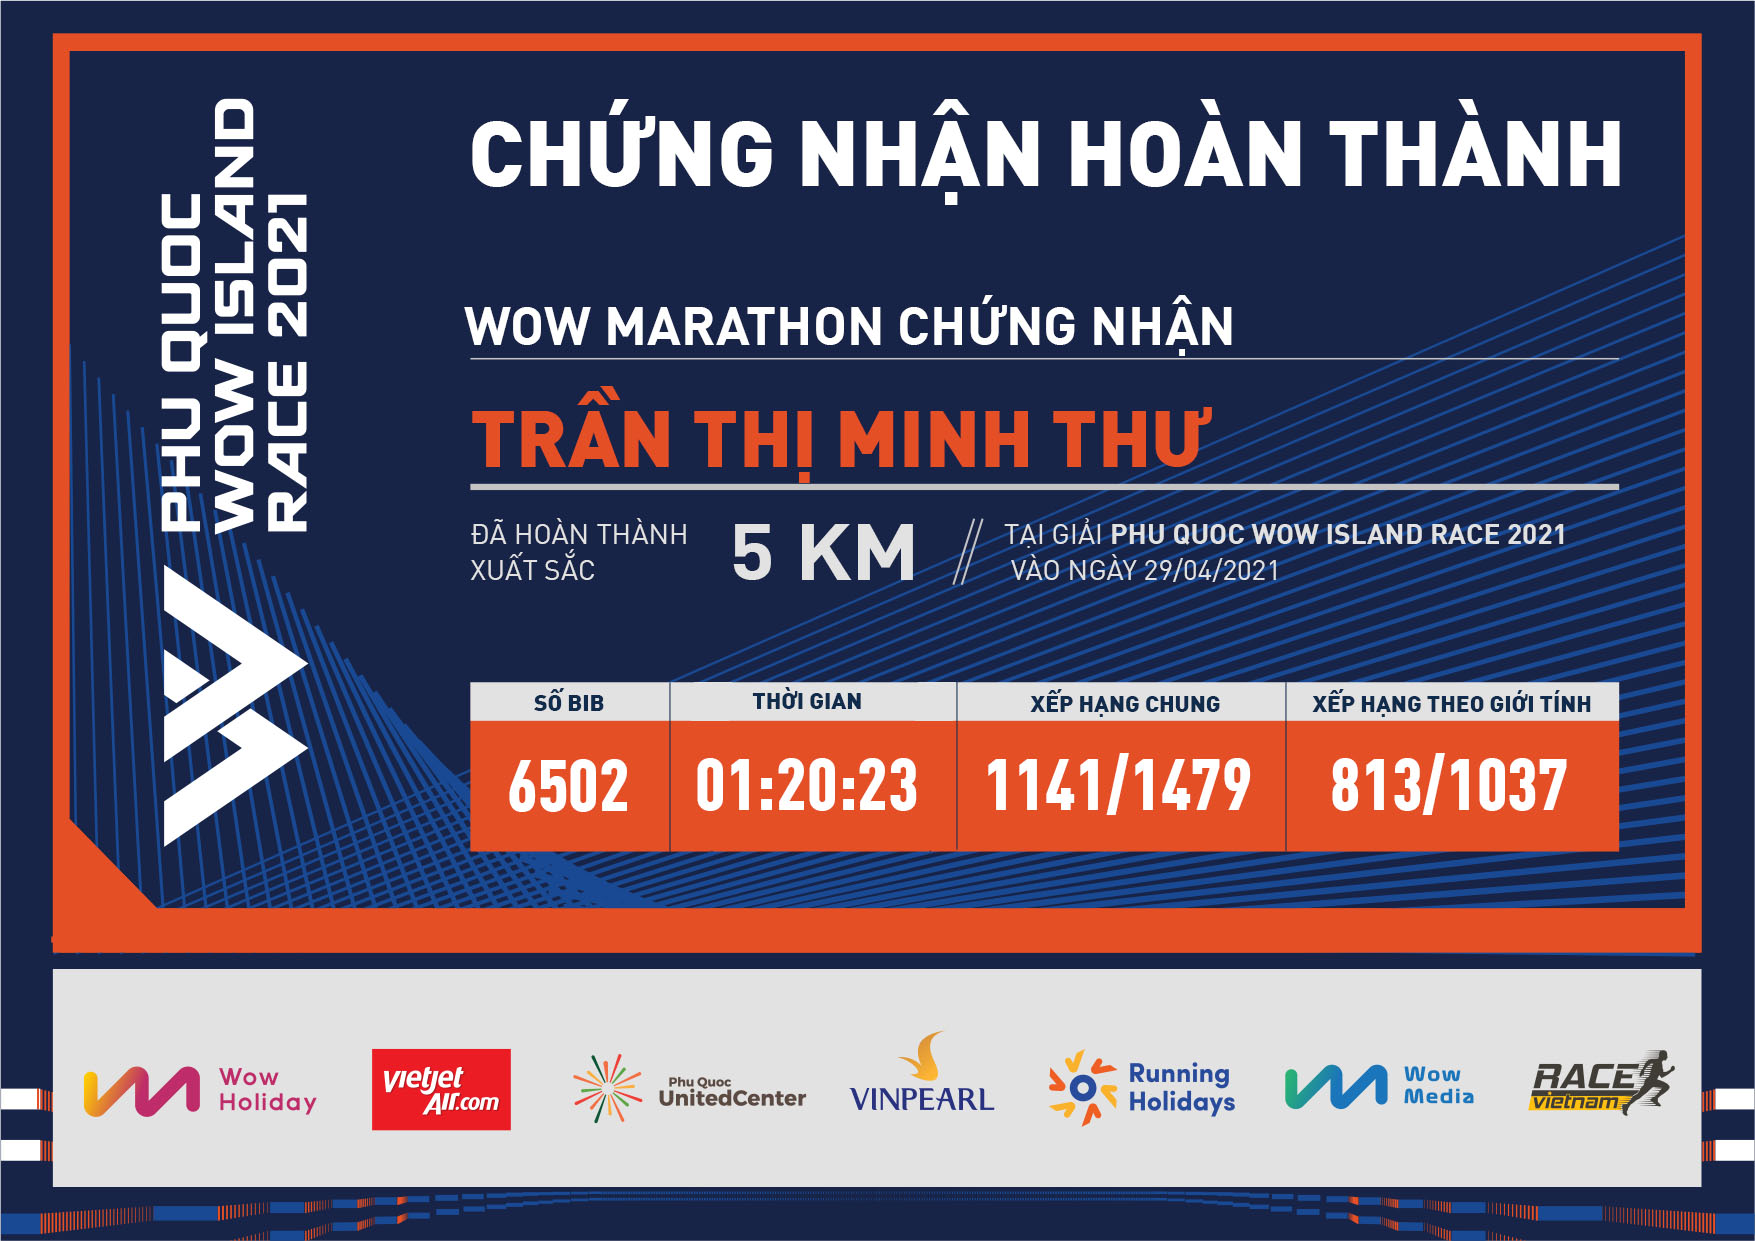 6502 - Trần Thị Minh Thư